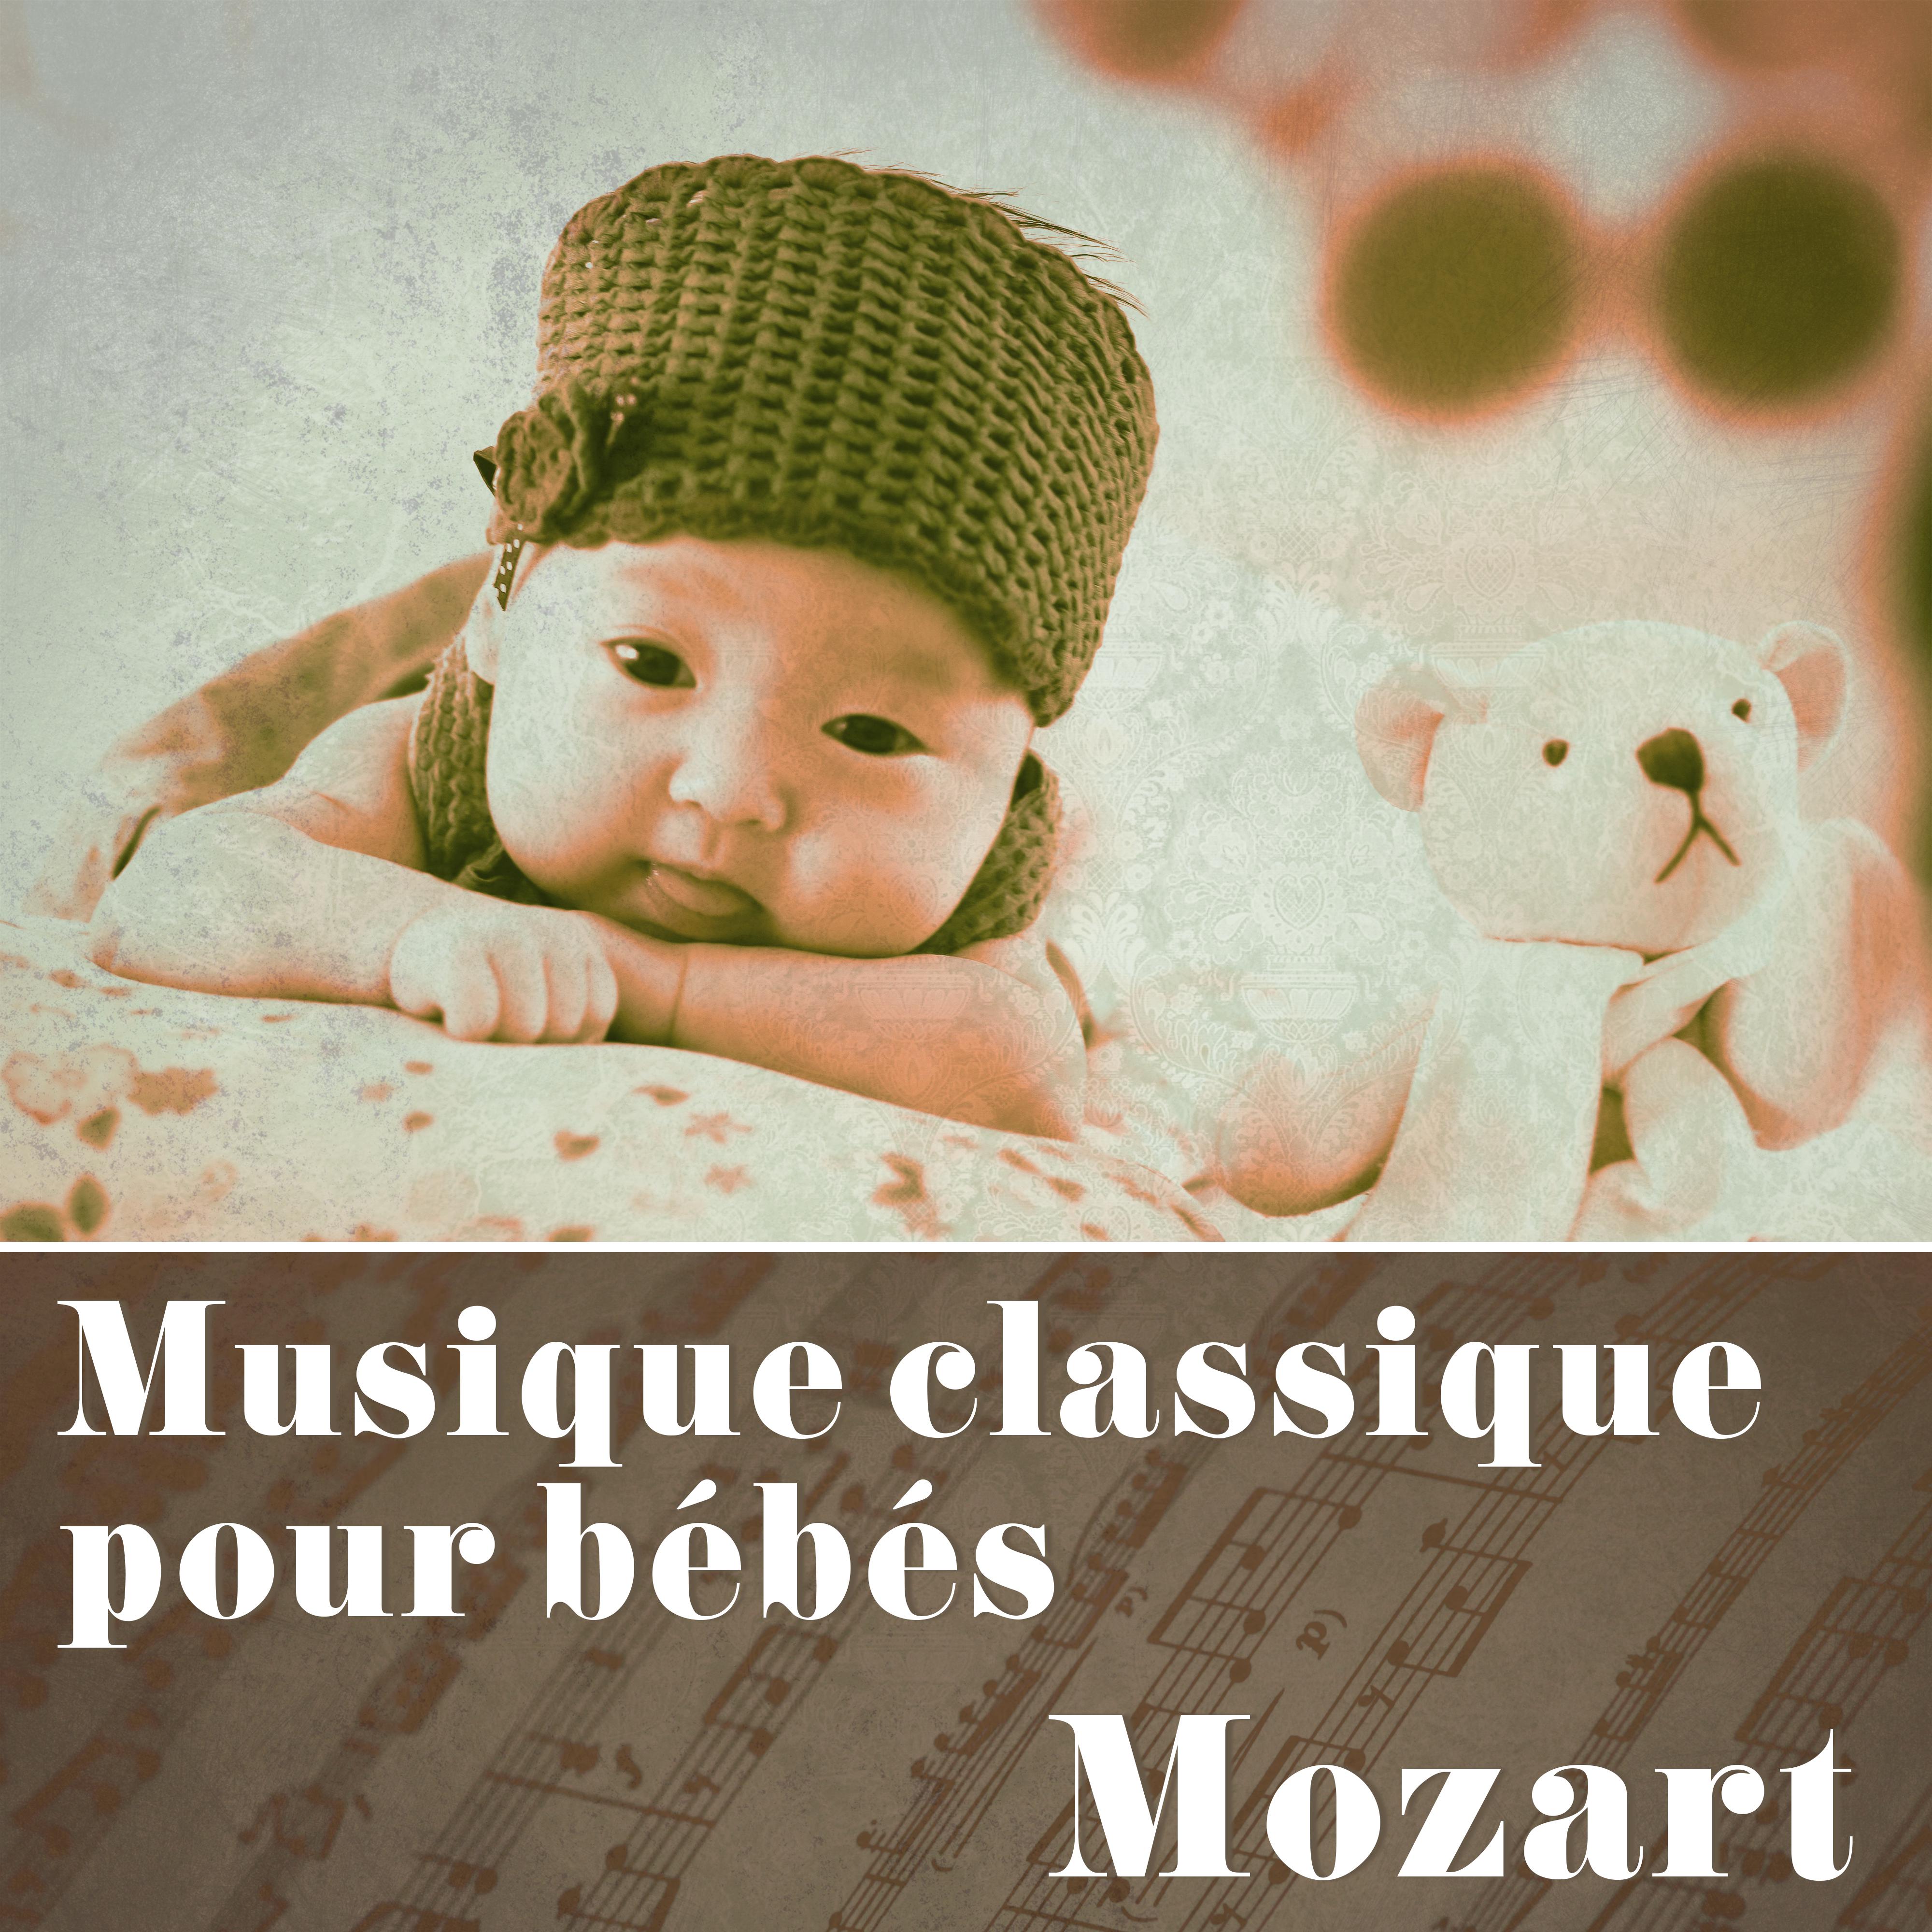 Musique classique pour bébés: Mozart – Sons relaxants de la musique classique, la musique pour stimuler le cerveau